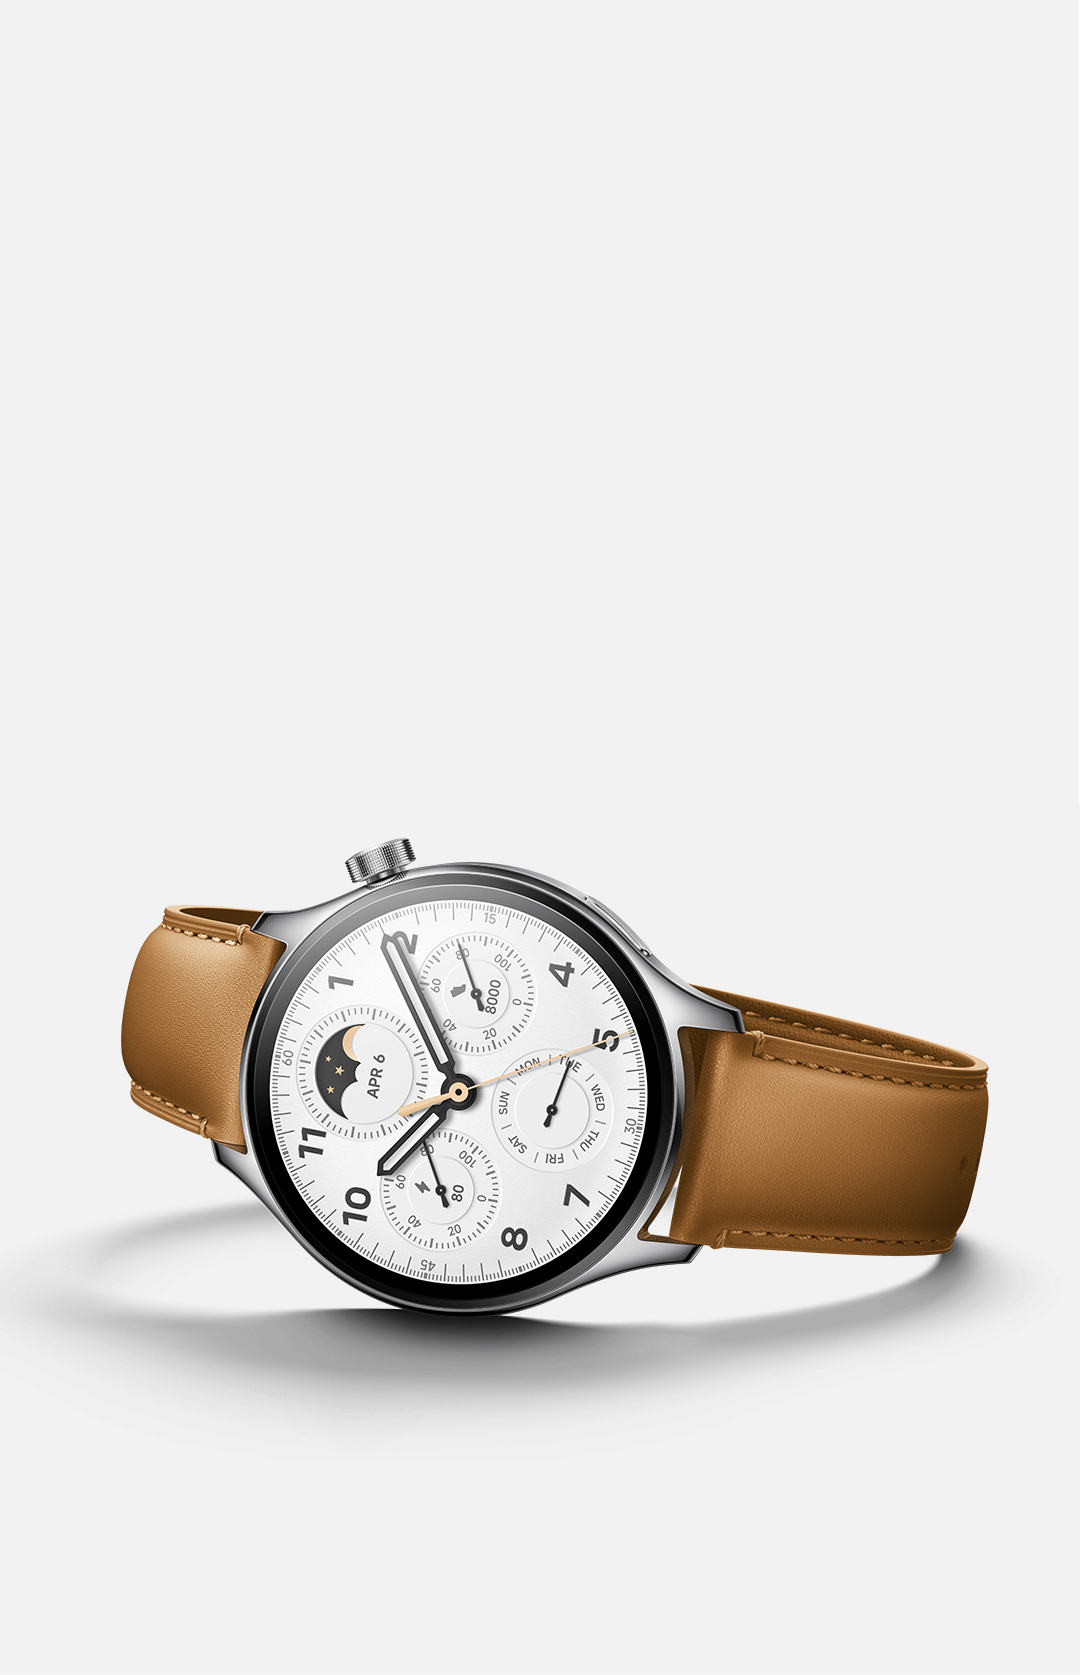 Xiaomi Watch S1 Pro Reloj Smartwatch Plata con Correa de Cuero Marrón -  Reloj smartwatch